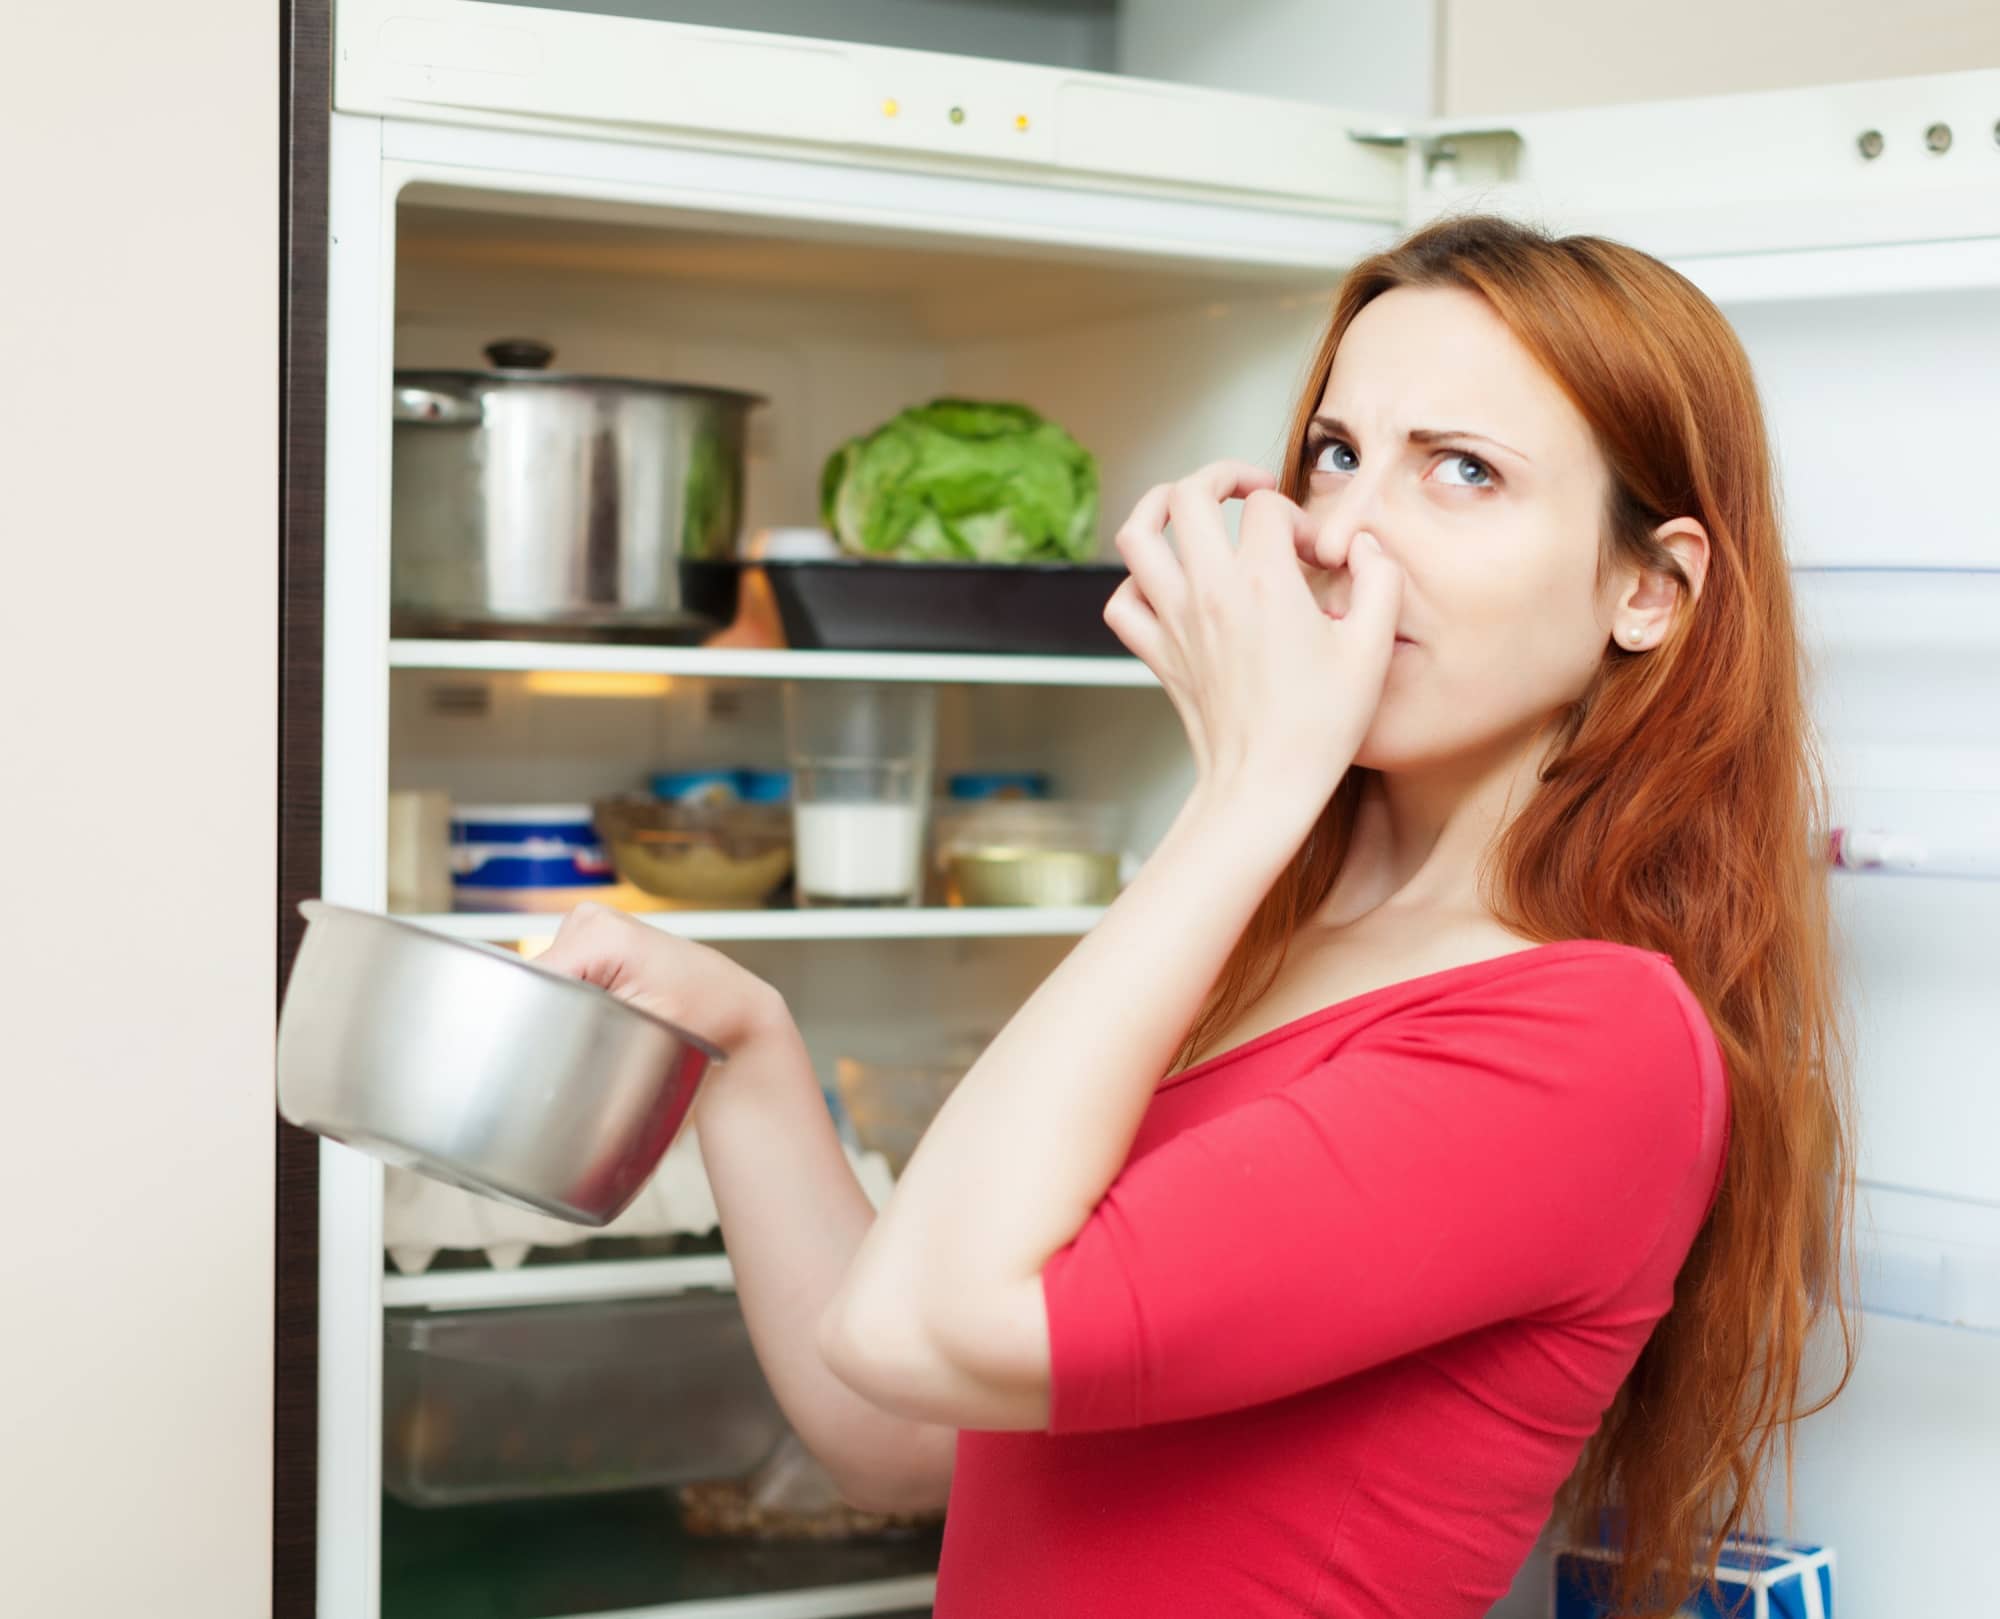 Неприятный содержать. Испорченная еда. Неприятный запах в холодильнике. Испорченные продукты в холодильнике. Неприятный запах из холодильника.